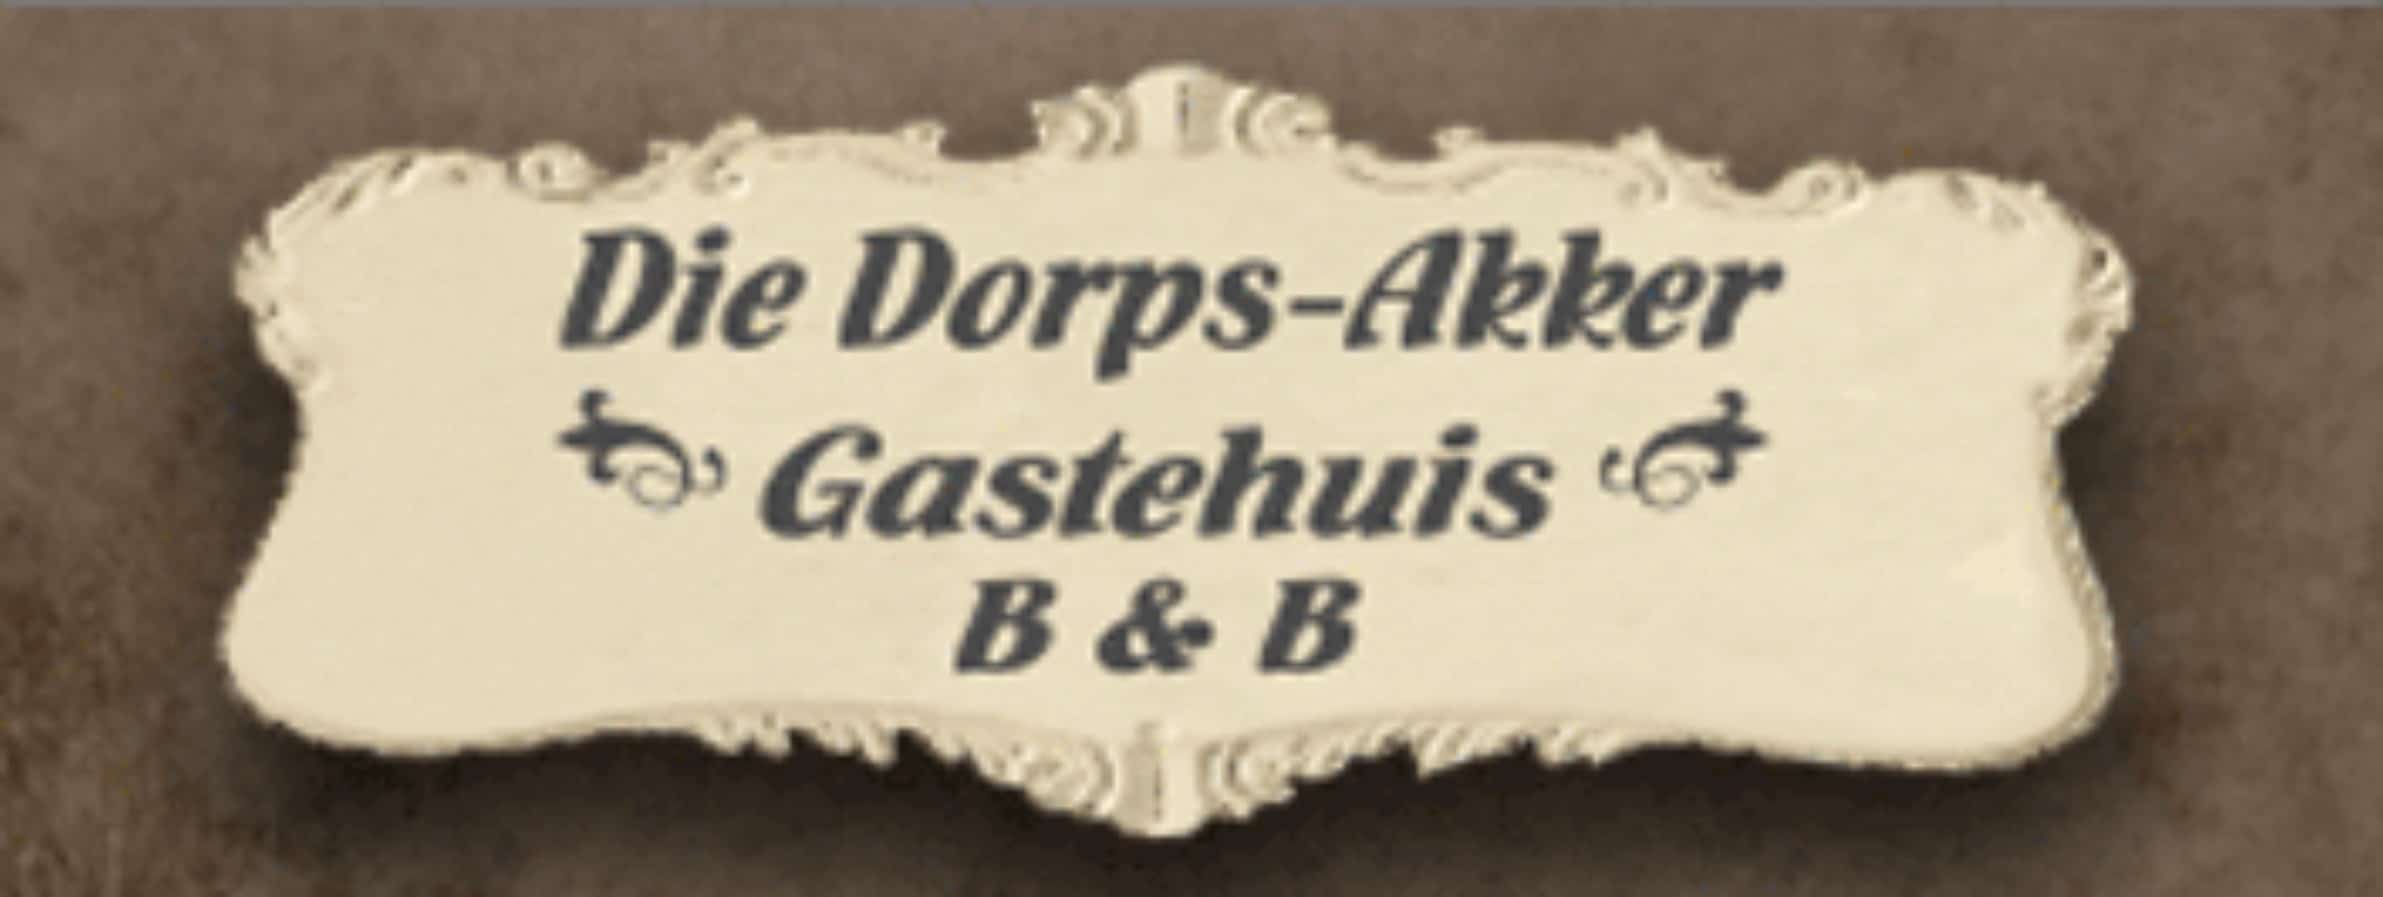 Die Dorps-Akker Guest House Heidelberg 1